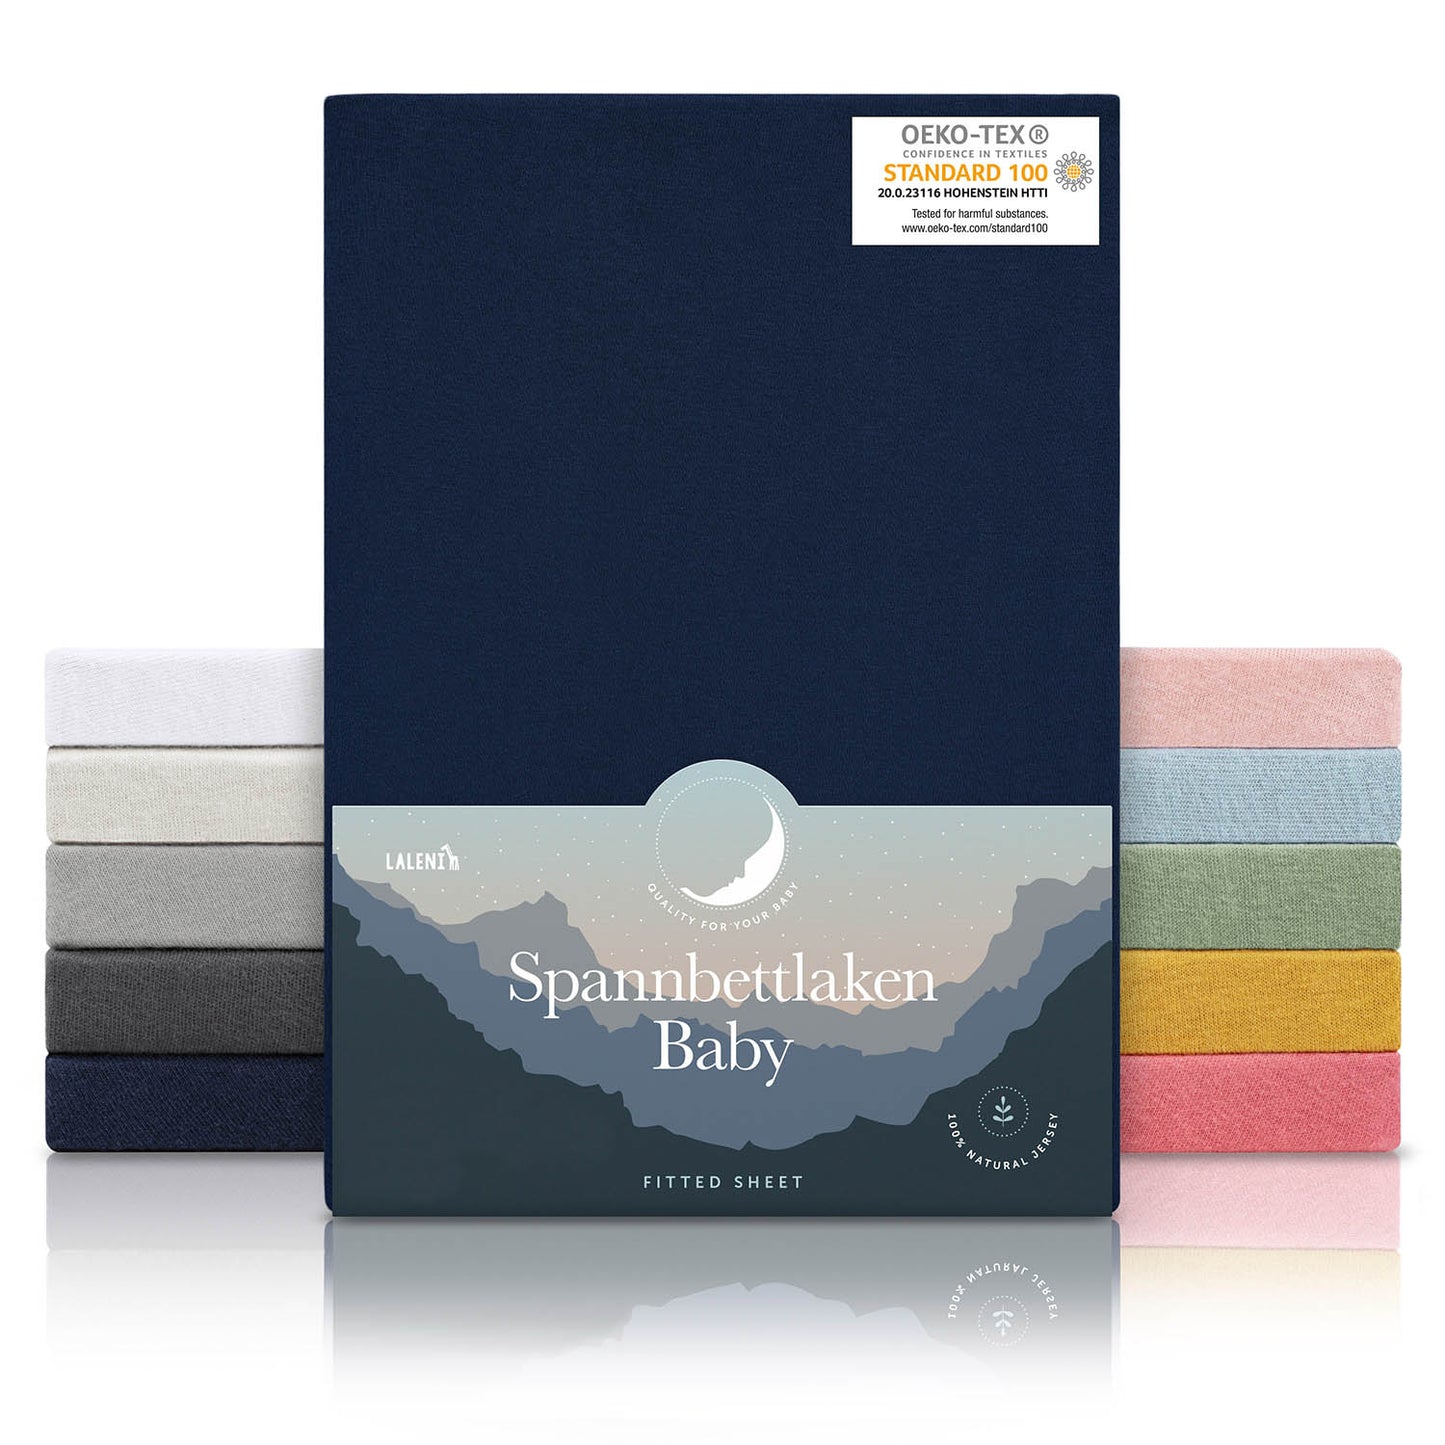 Verpackung von dunkelblauen Spannbettlaken für Babys mit Öko-Tex Standard 100 Siegel präsentiert neben einem Stapel Laken in verschiedenen Farben.